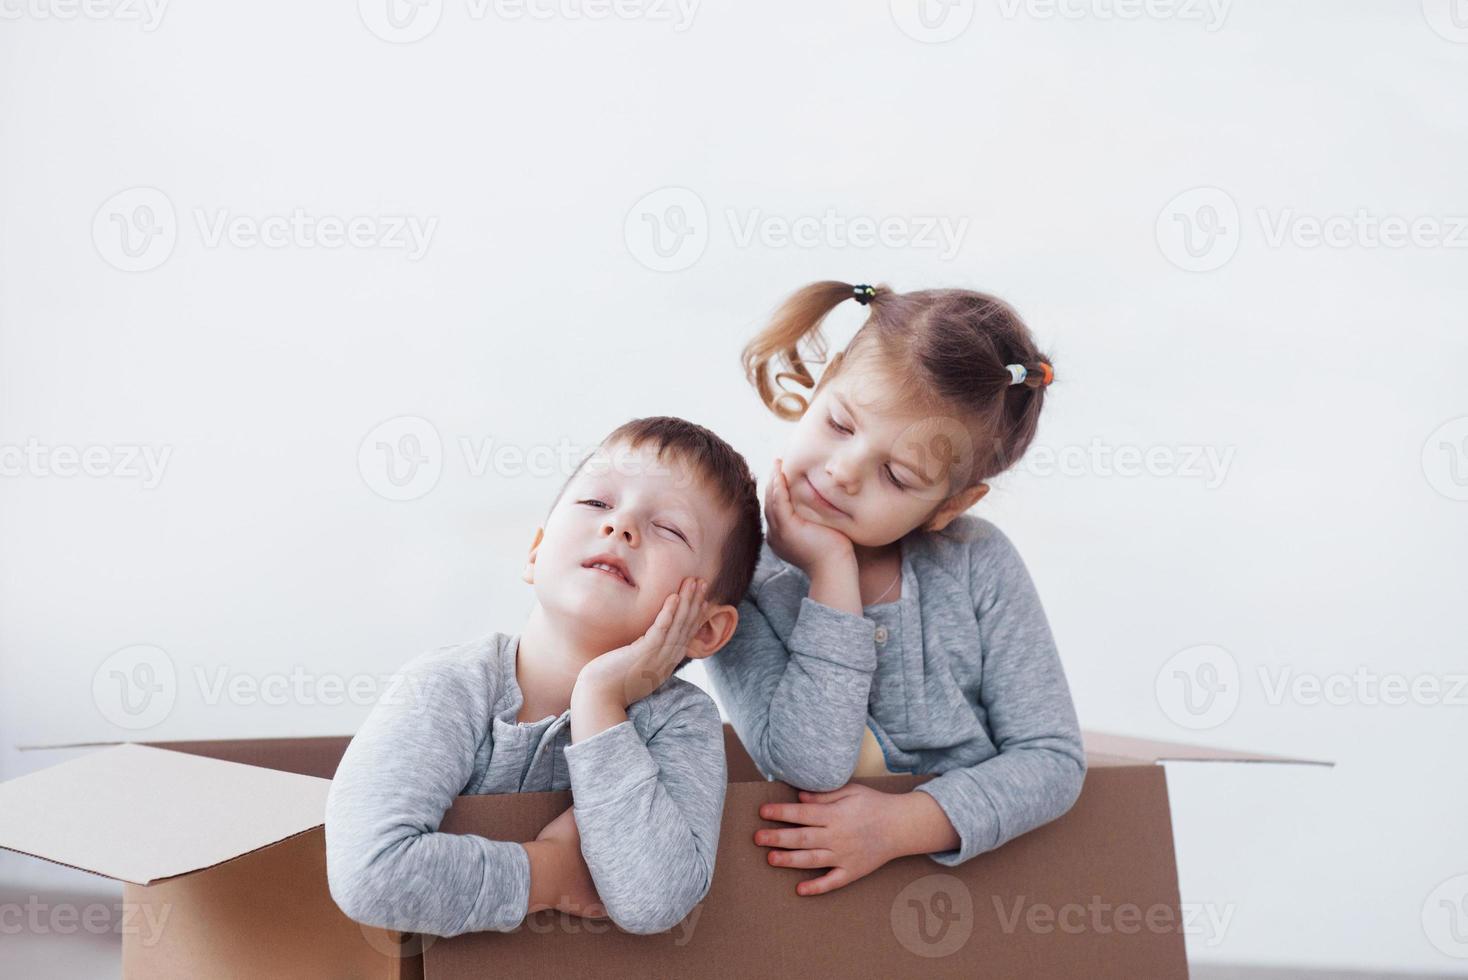 deux un petit garçon et une fille jouant dans des boîtes en carton. photo conceptuelle. les enfants s'amusent